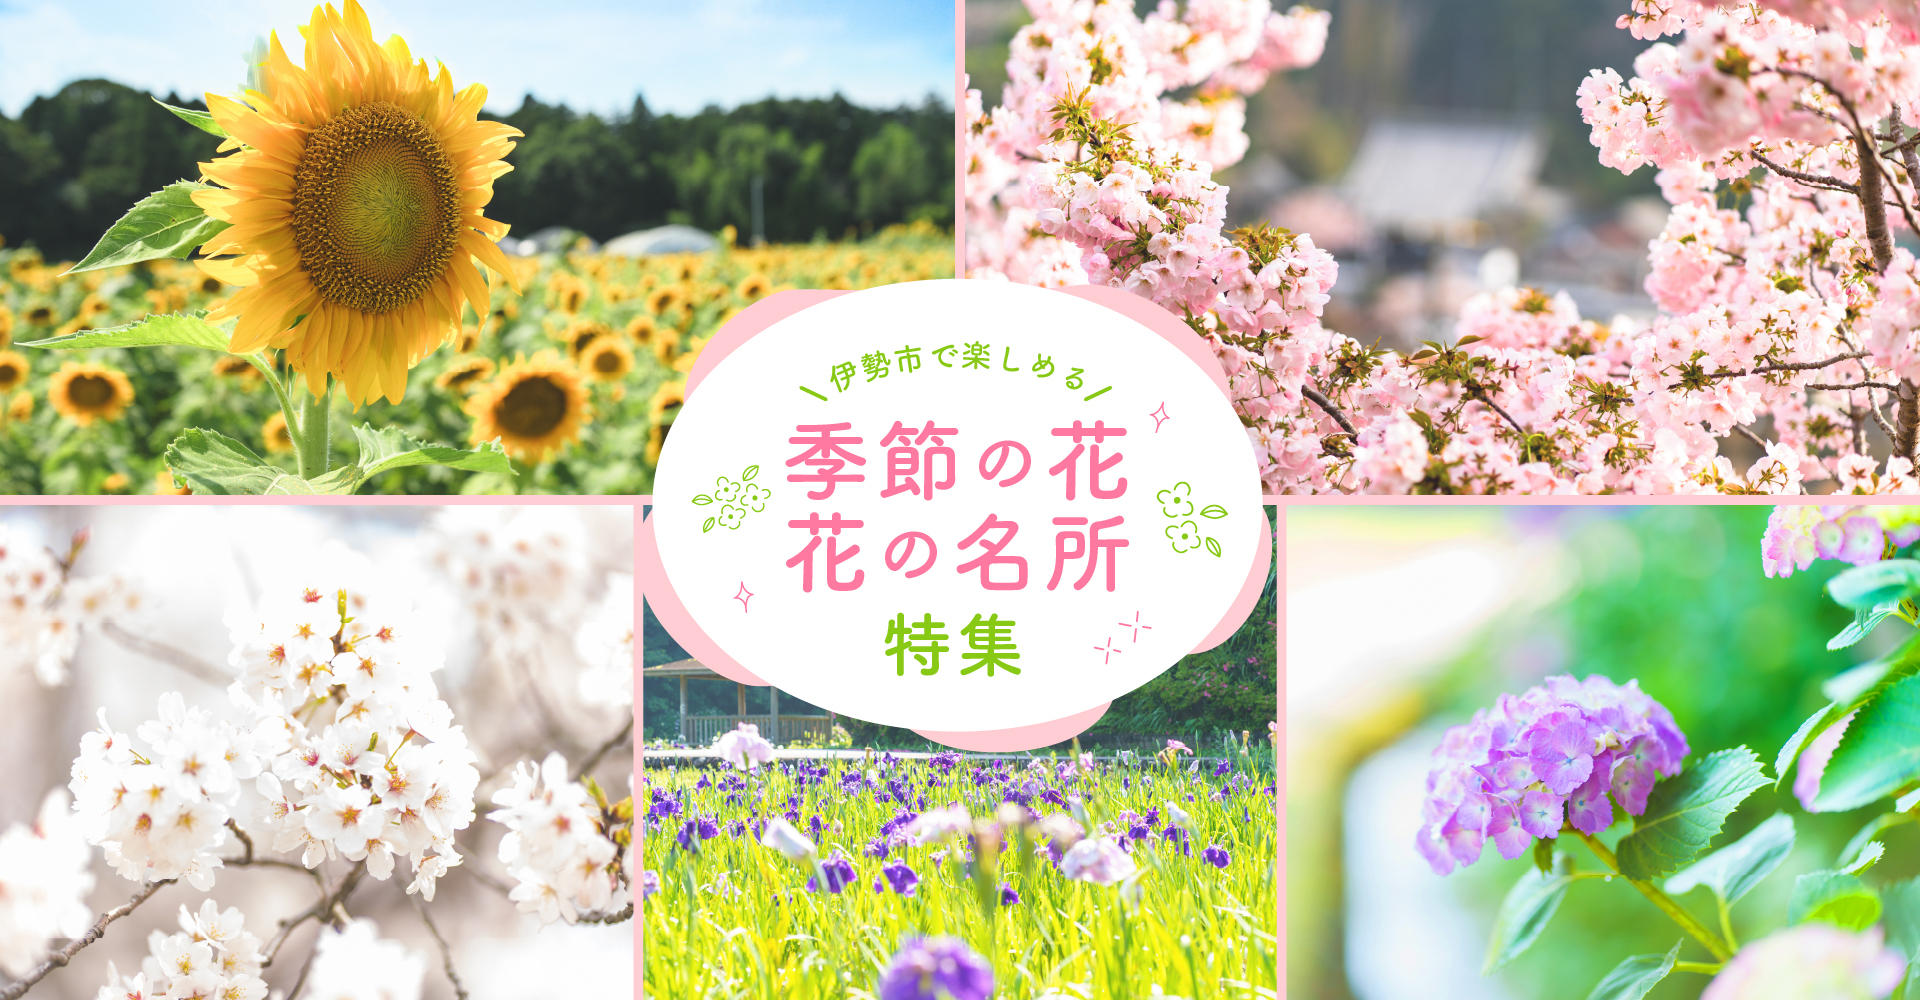 이세시에서 즐길 수 있는 계절의 꽃・꽃의 명소 특집